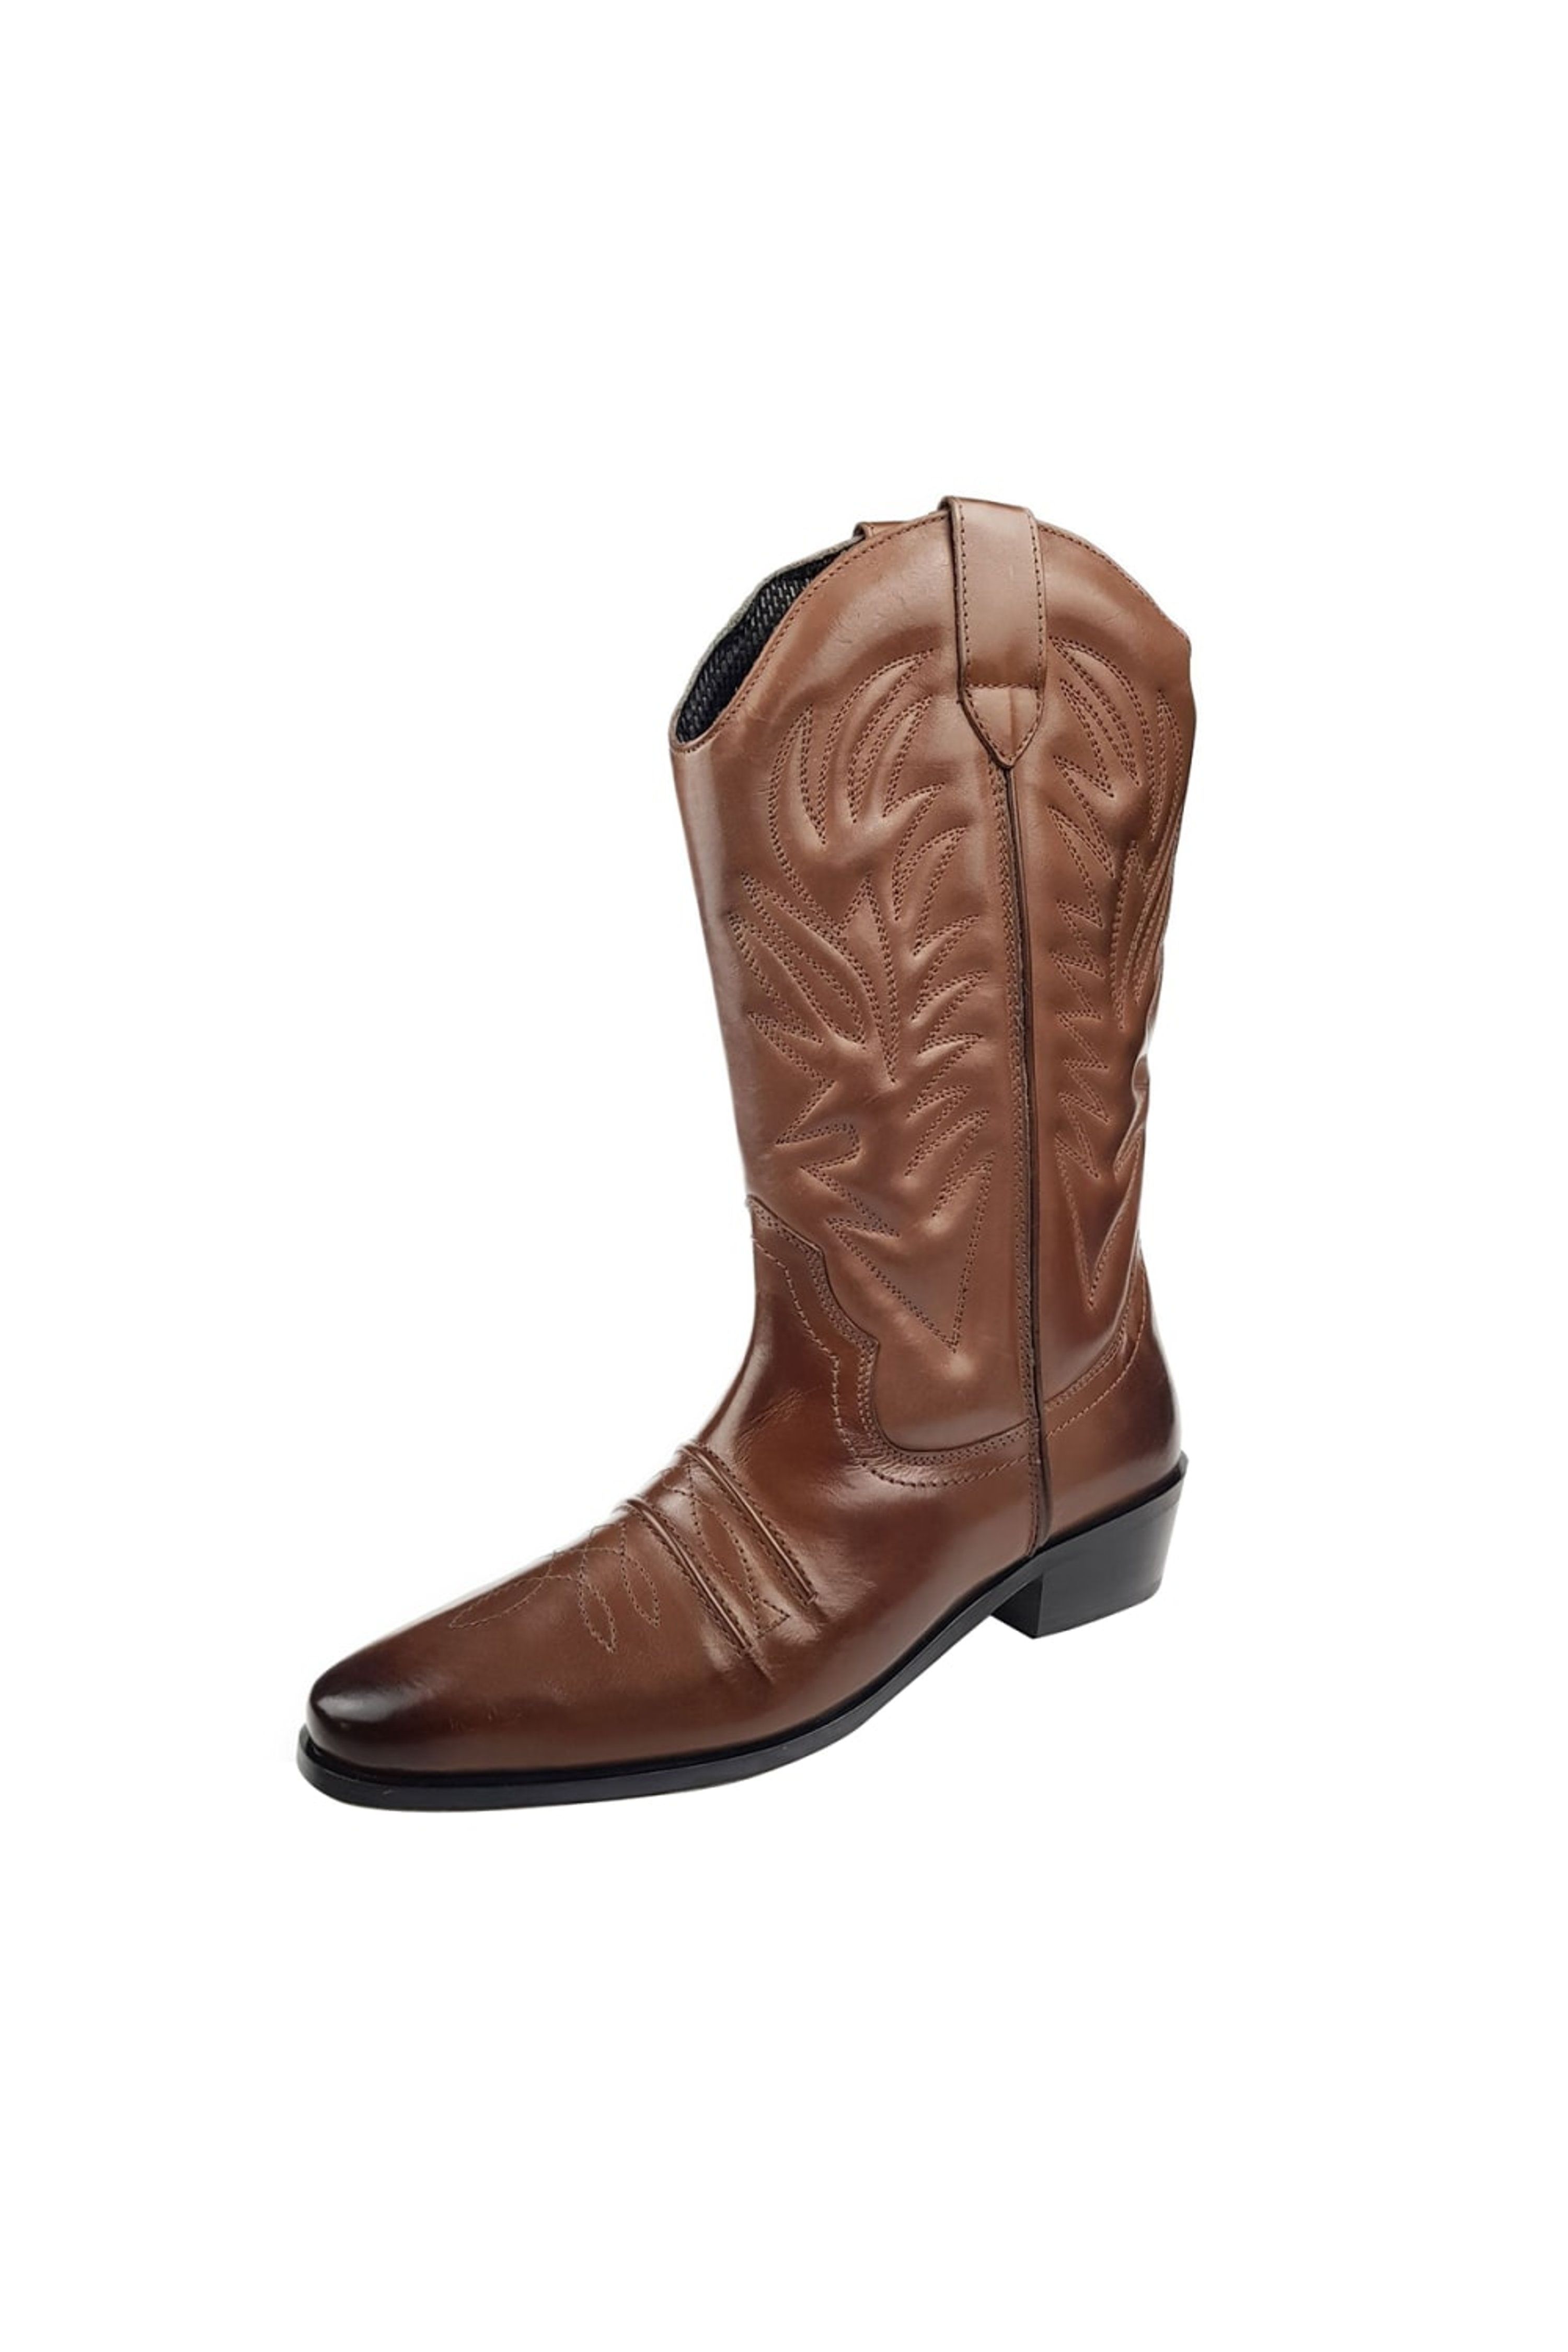 Woodland Mens High Clive Western Cowboy Boots (Dark Brown) - 10 - Also in: 12, 8, 9, 7, 13, 11 | Verishop